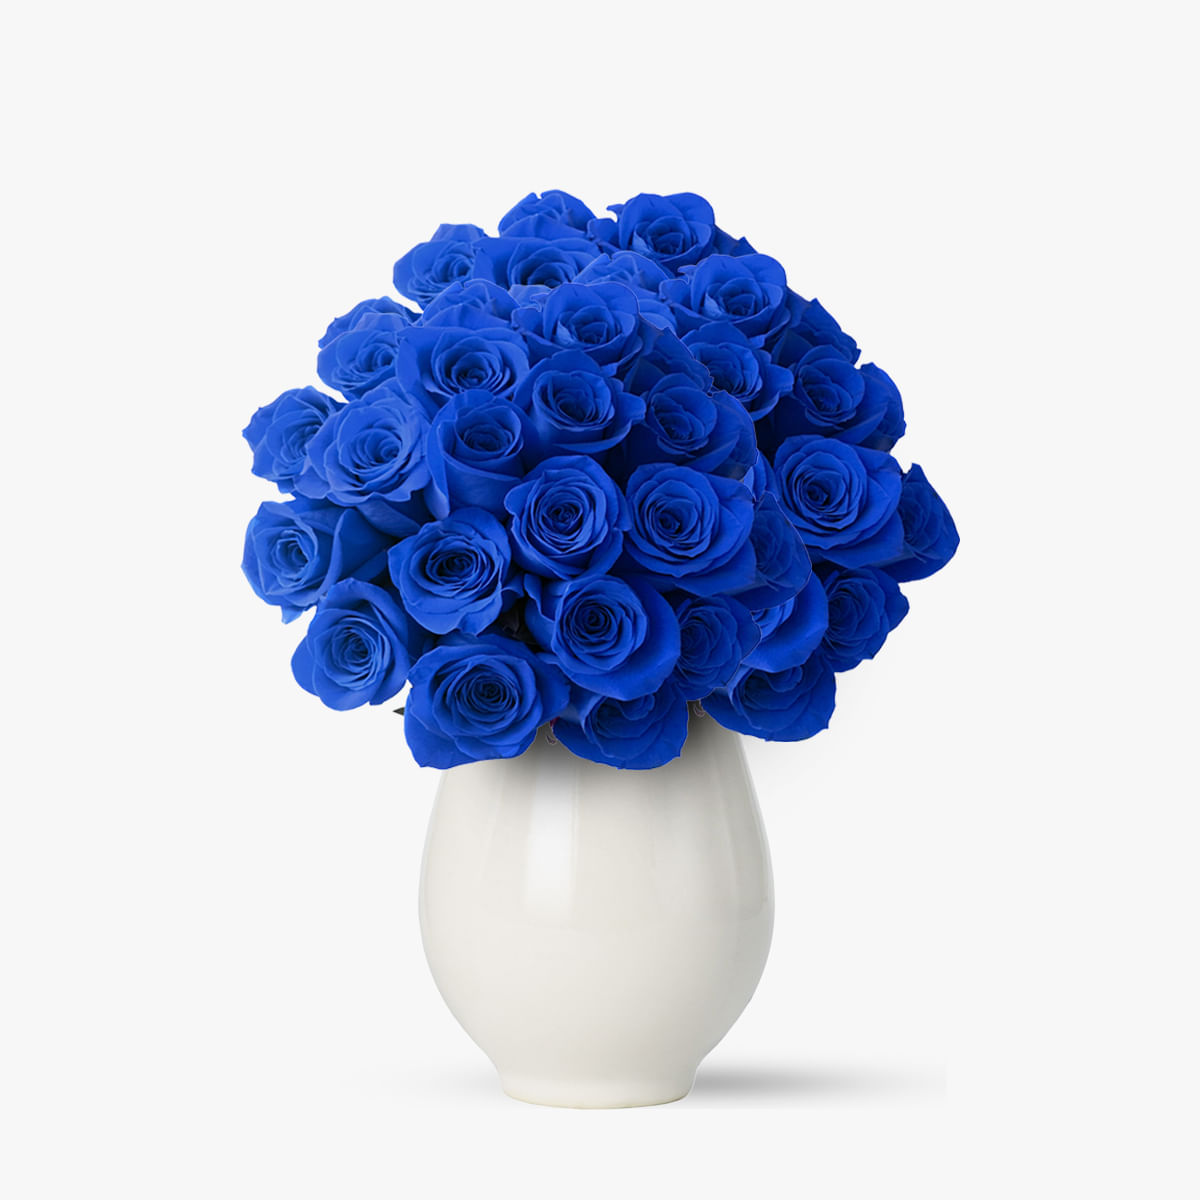 Buchet de 55 trandafiri albastri – Standard albastri imagine 2022